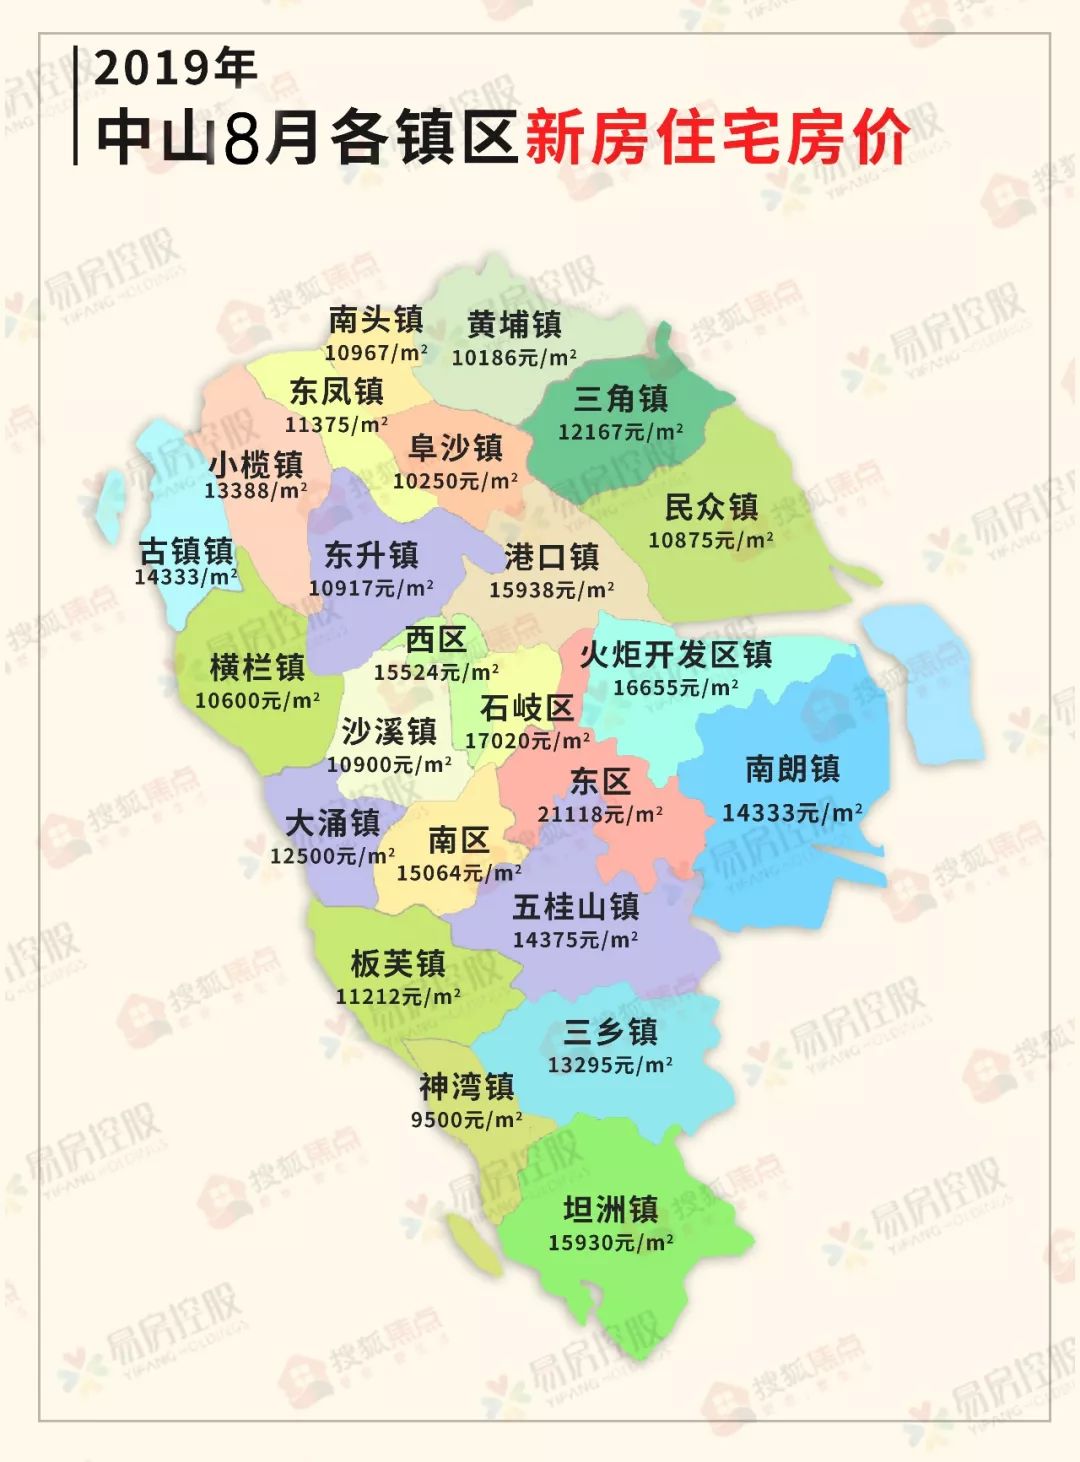 中山市镇区地图图片